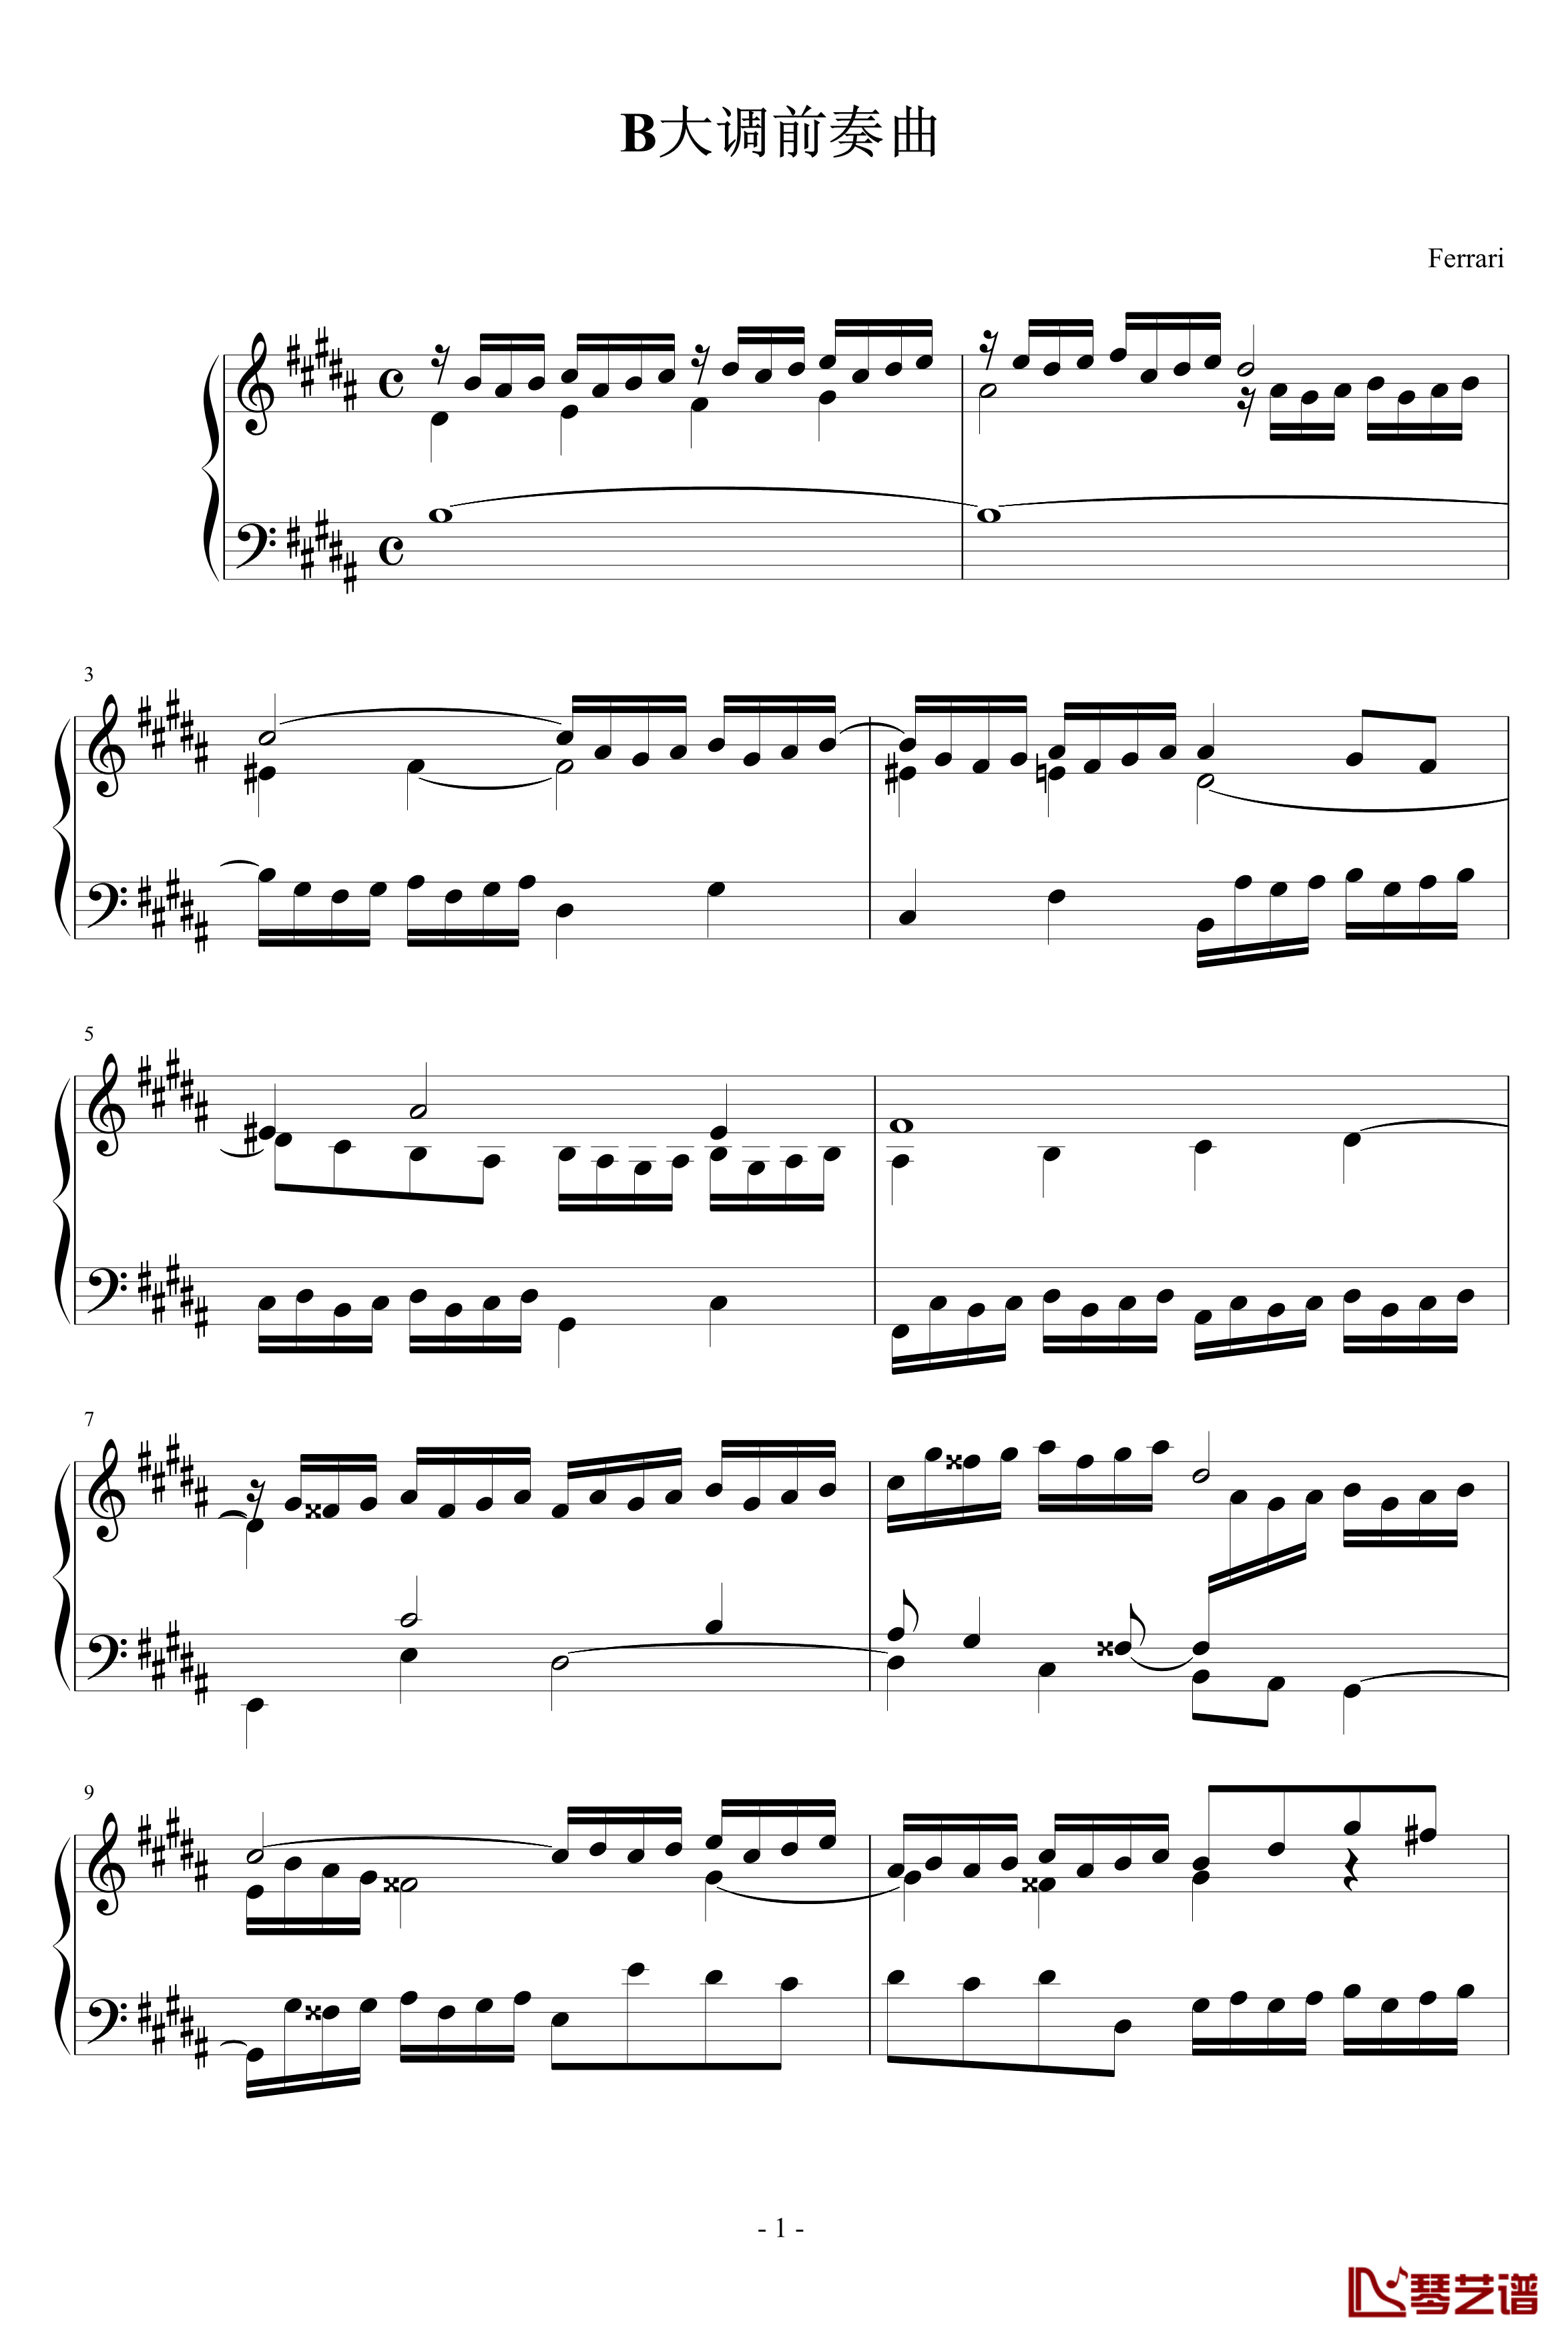 前奏曲钢琴谱-Ferrari版-巴赫1